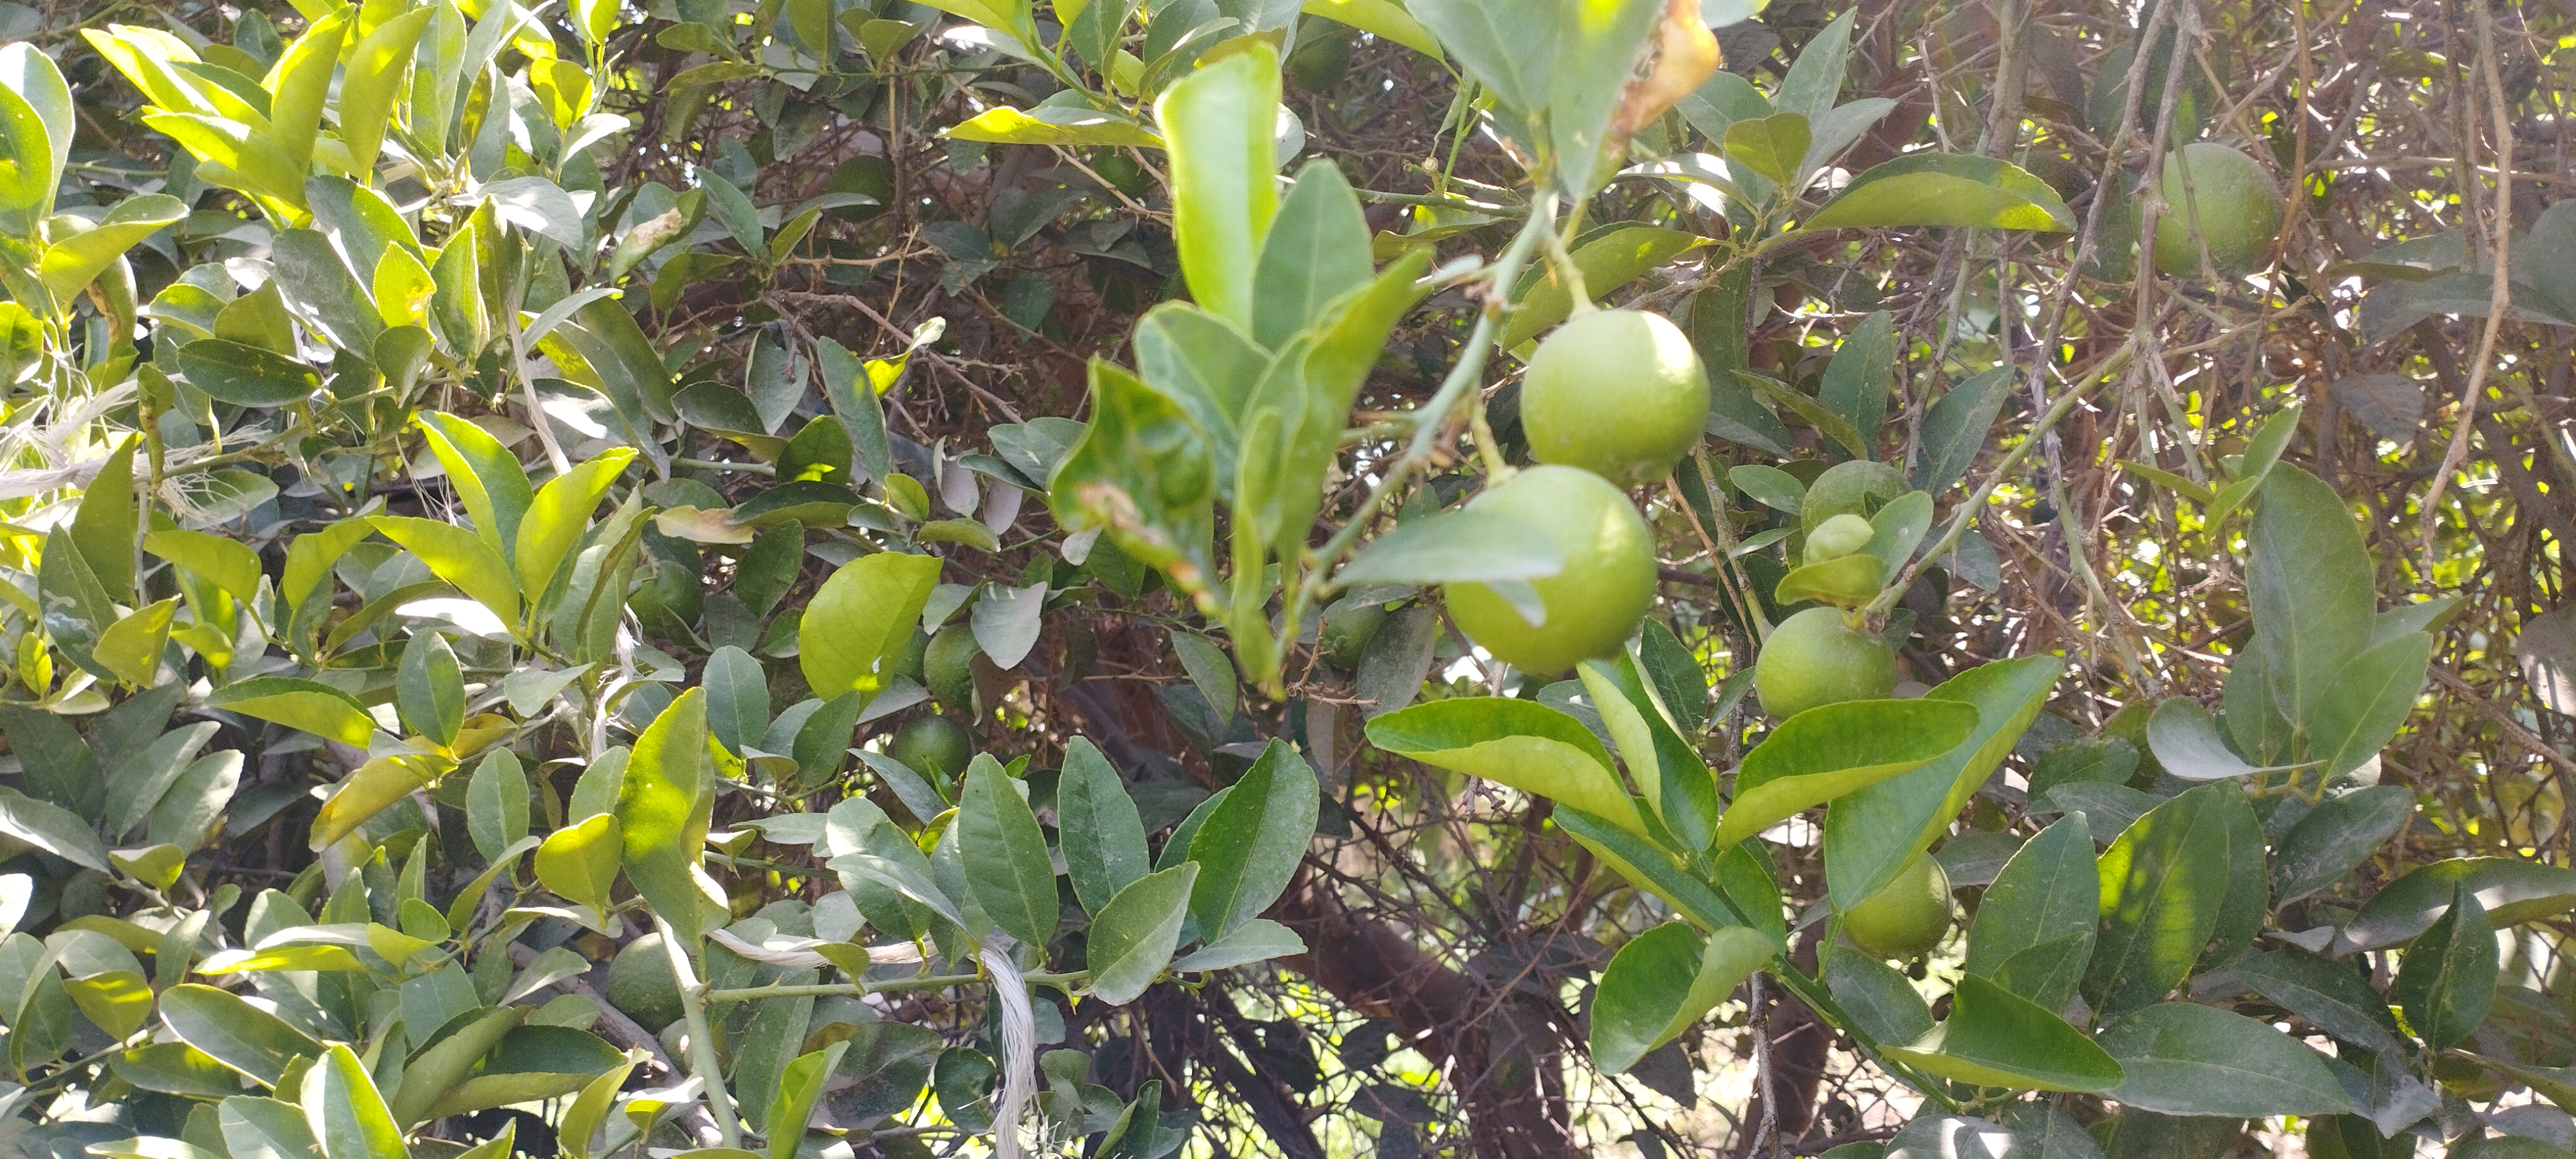 اشجار الليمون تزين مزارع المنيا (1)